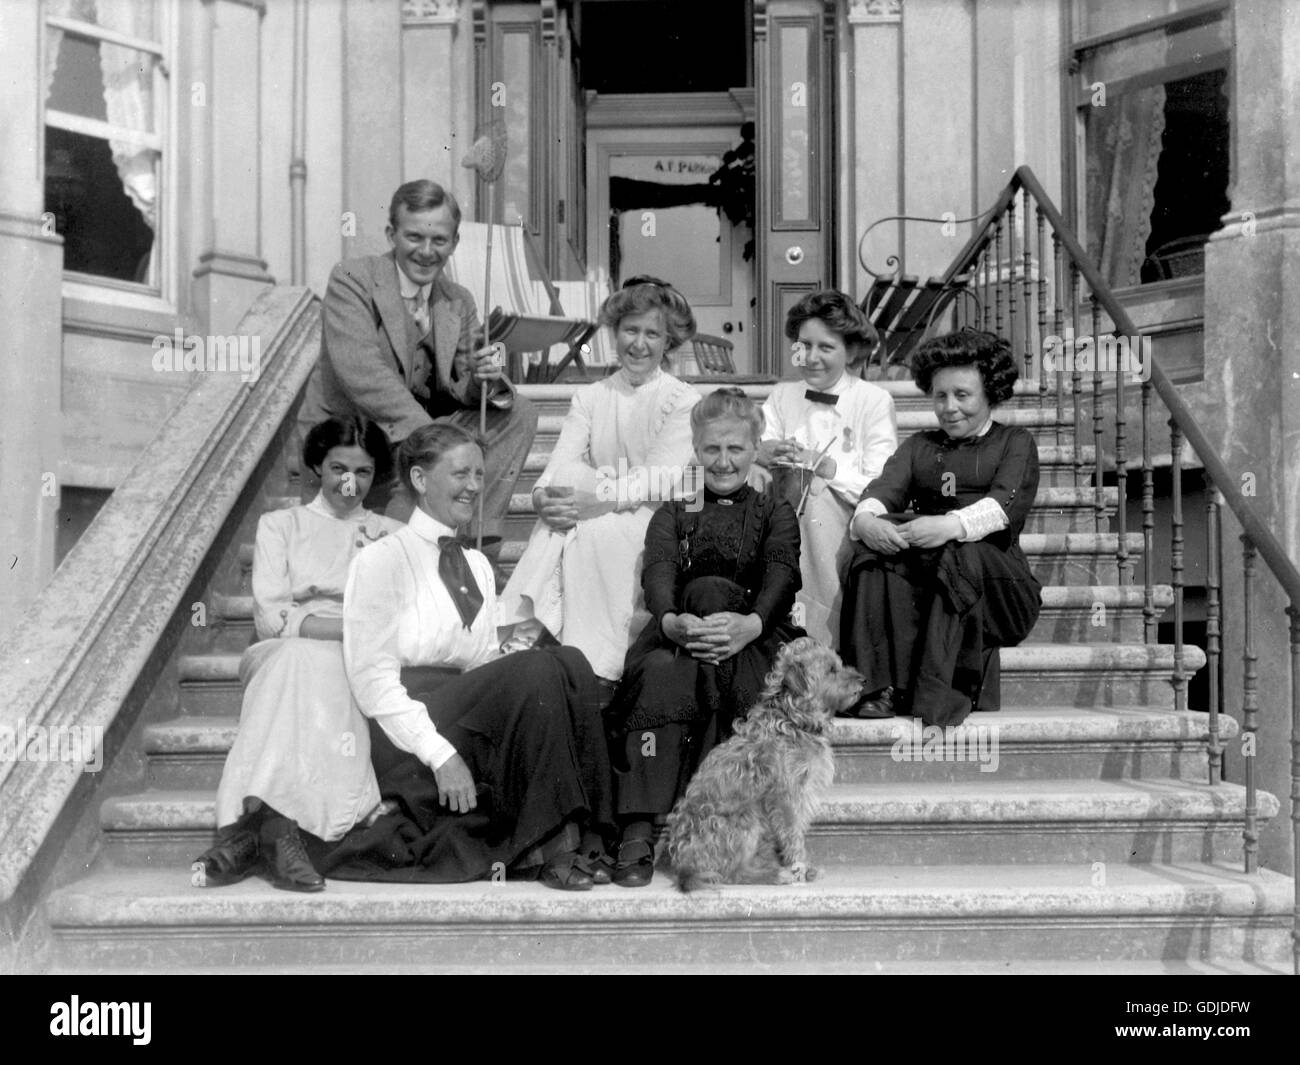 Edwardian Post-viktorianischen Ära UK mit einem eher informelle Gruppenfoto von dem, was könnten Hausbesitzer und Mitarbeiter Lächeln für die Kamera oder ein Gast-Haus-Besitzer und Personal. Beachten Sie die nicht gleichgültig Terrier Hund!  Foto von Tony Henshaw Stockfoto